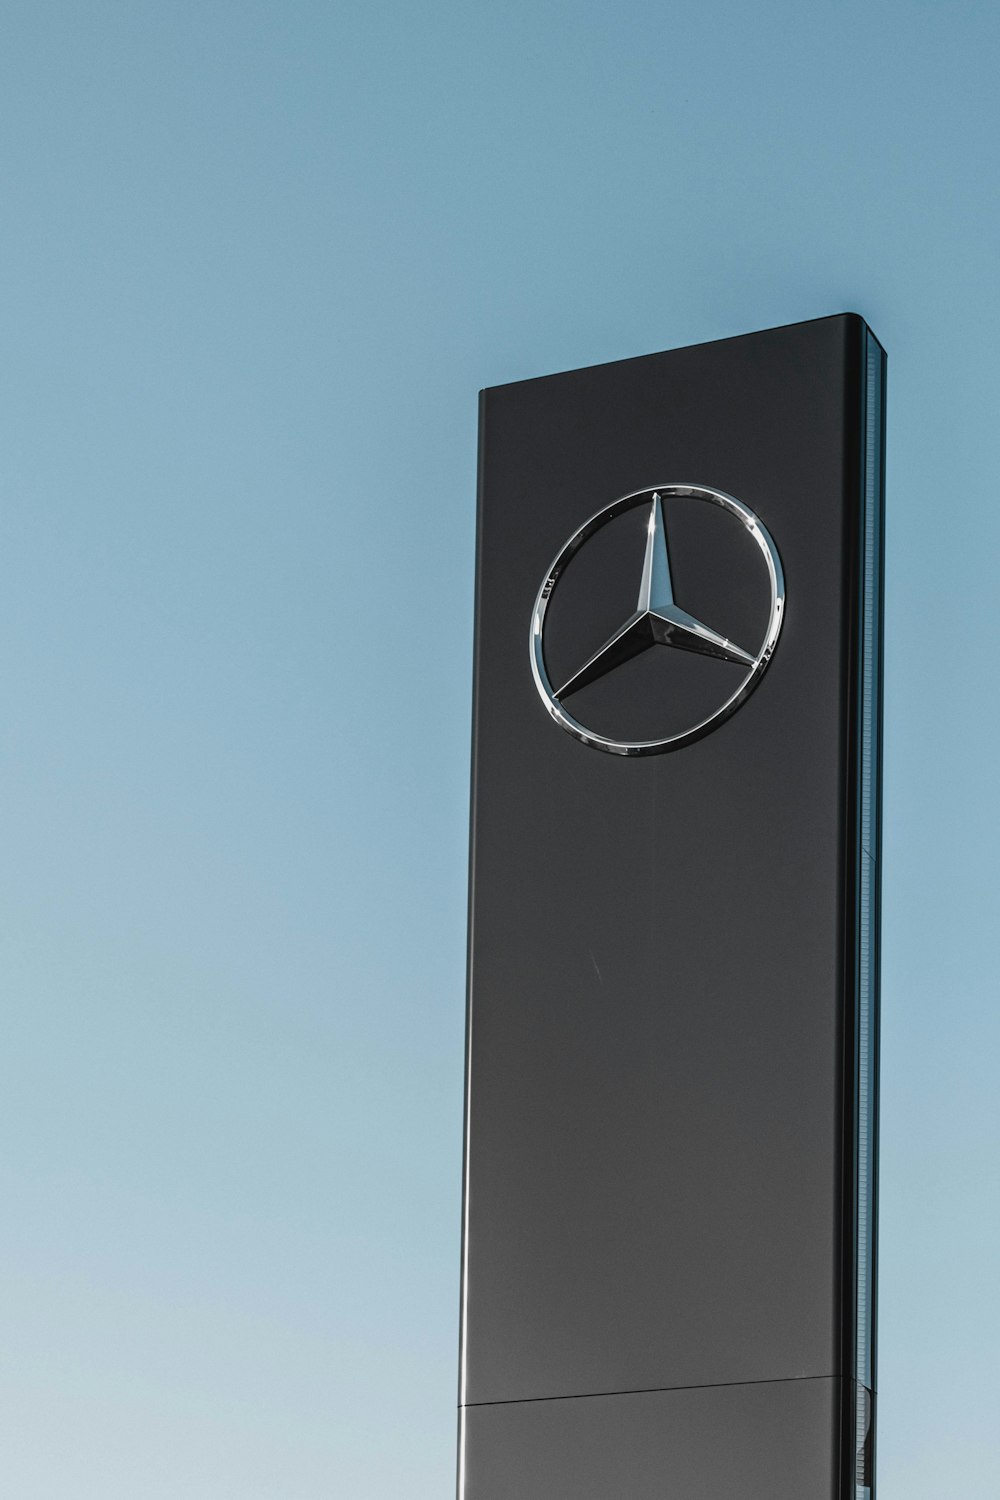 Sinalização Mercedes-Benz sob céu azul claro